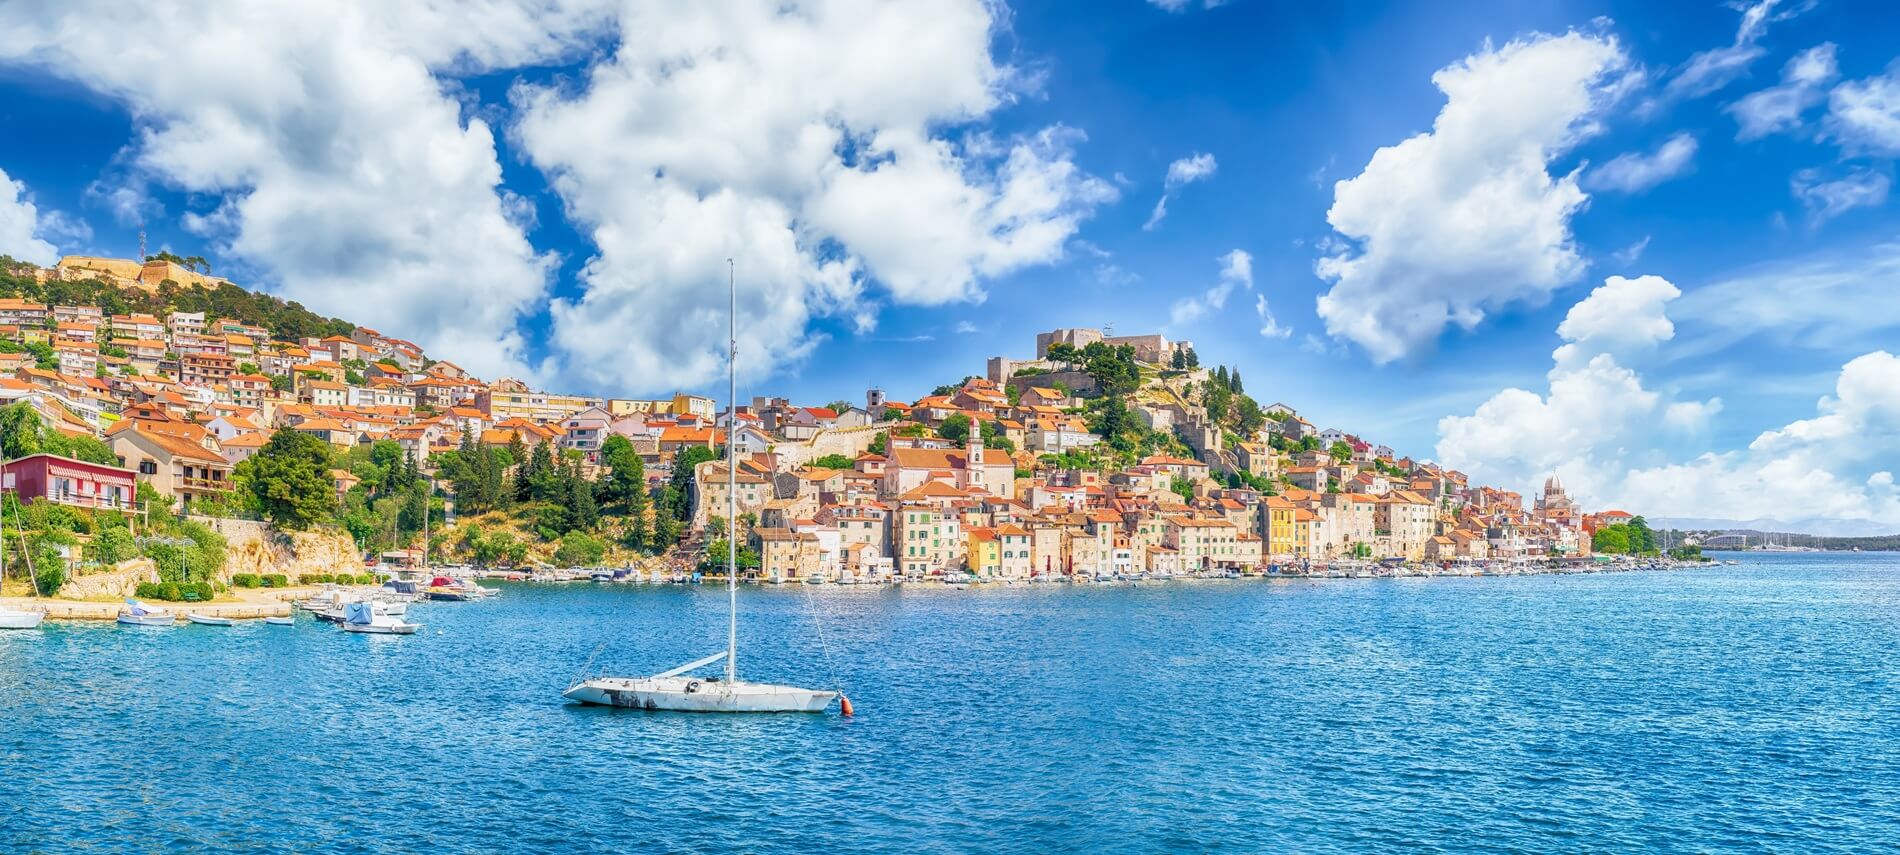 Sibenik Kroatien Blick vom Meer aus